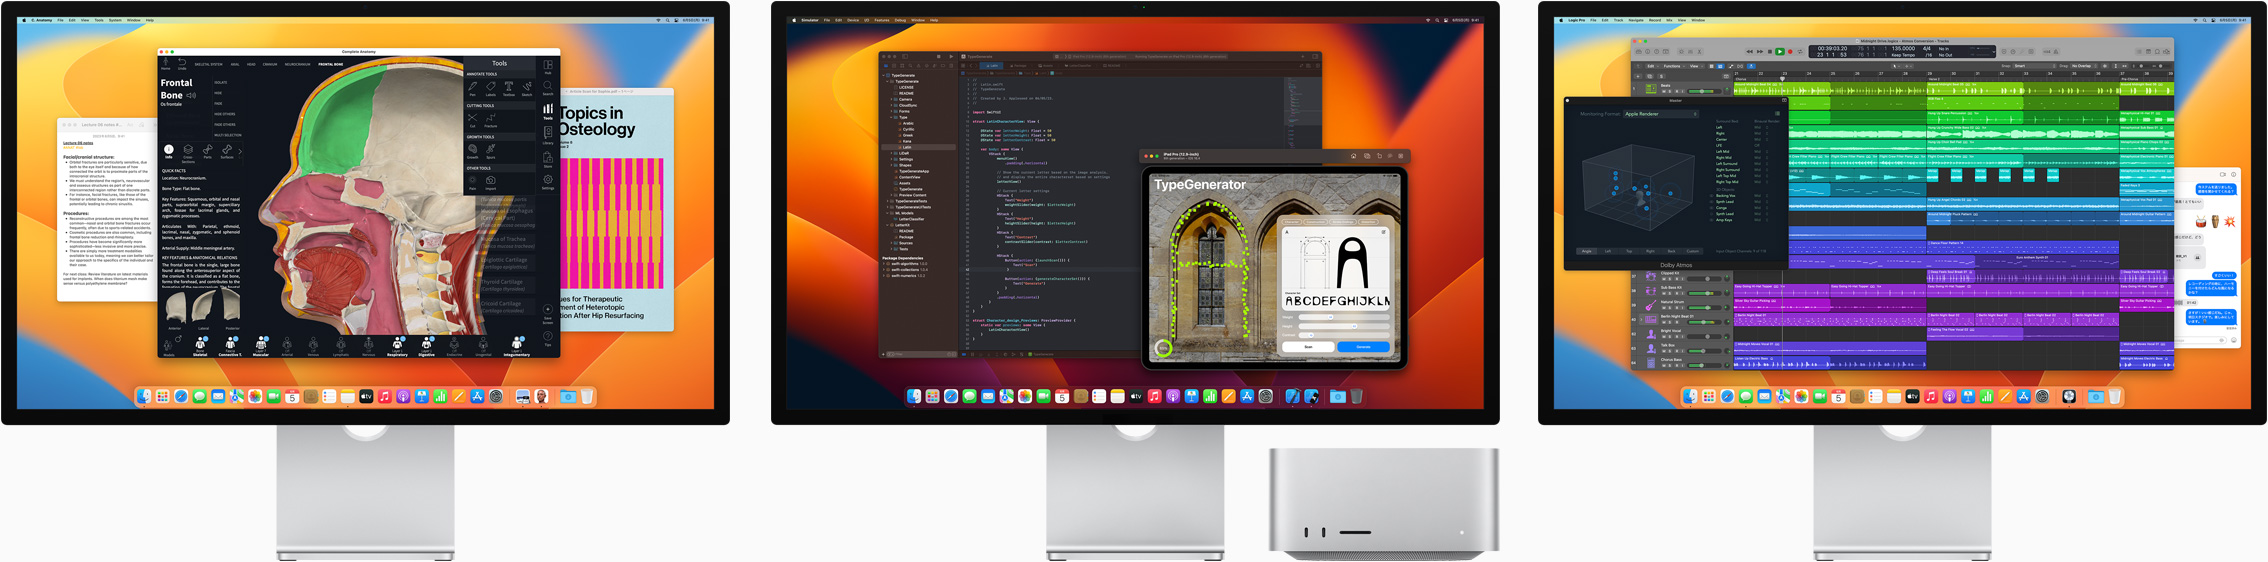 Mac Studioと3台のStudio Display。それぞれのスクリーンに異なるアプリが表示されている